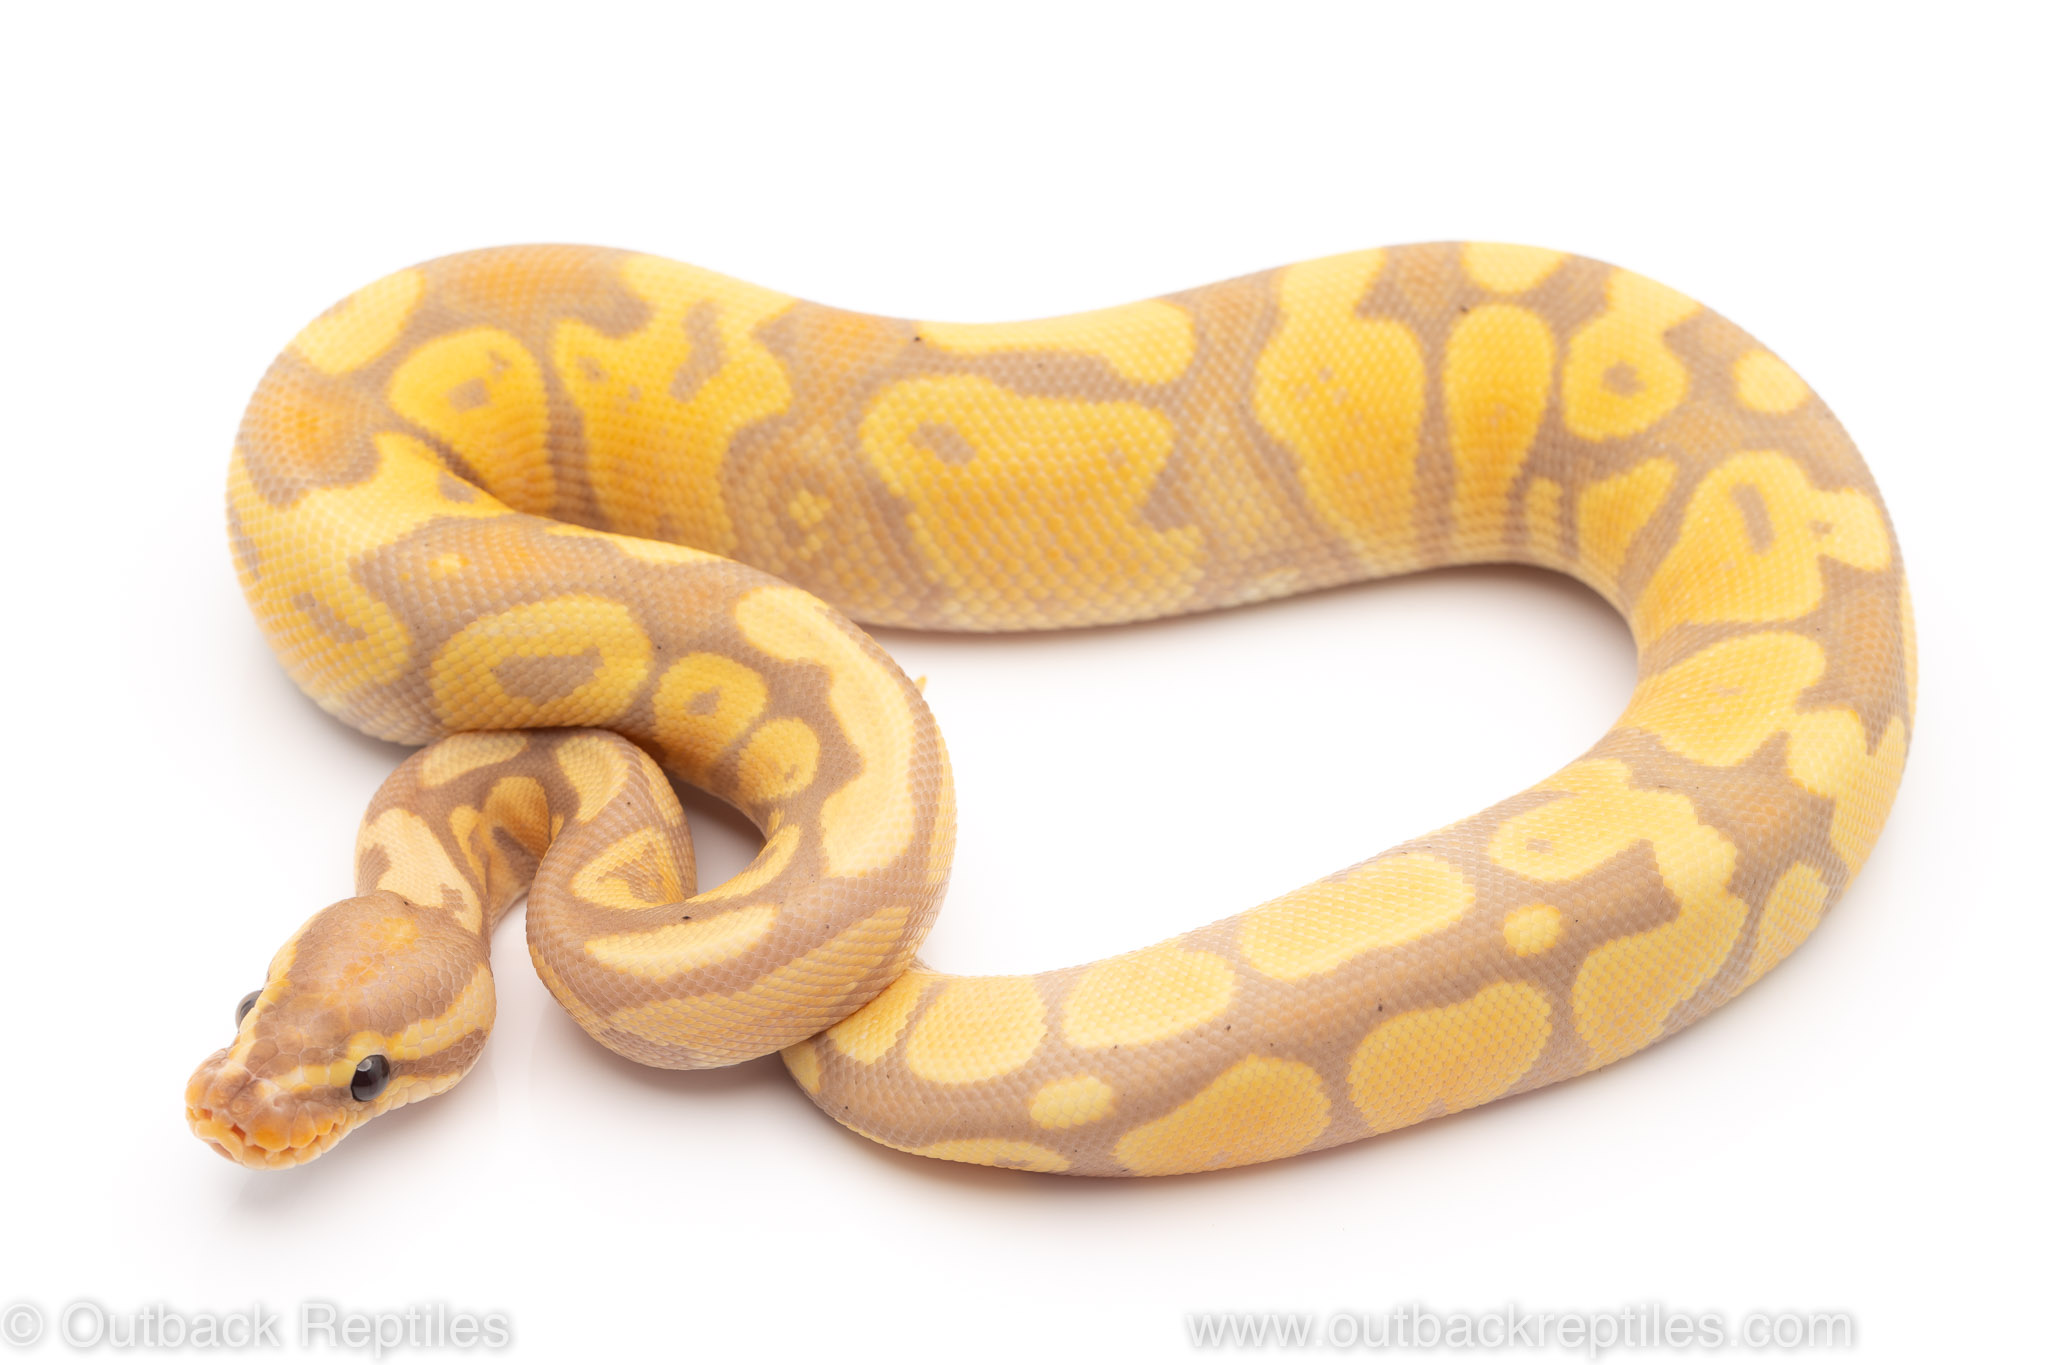 banana yellowbelly ball python for sale